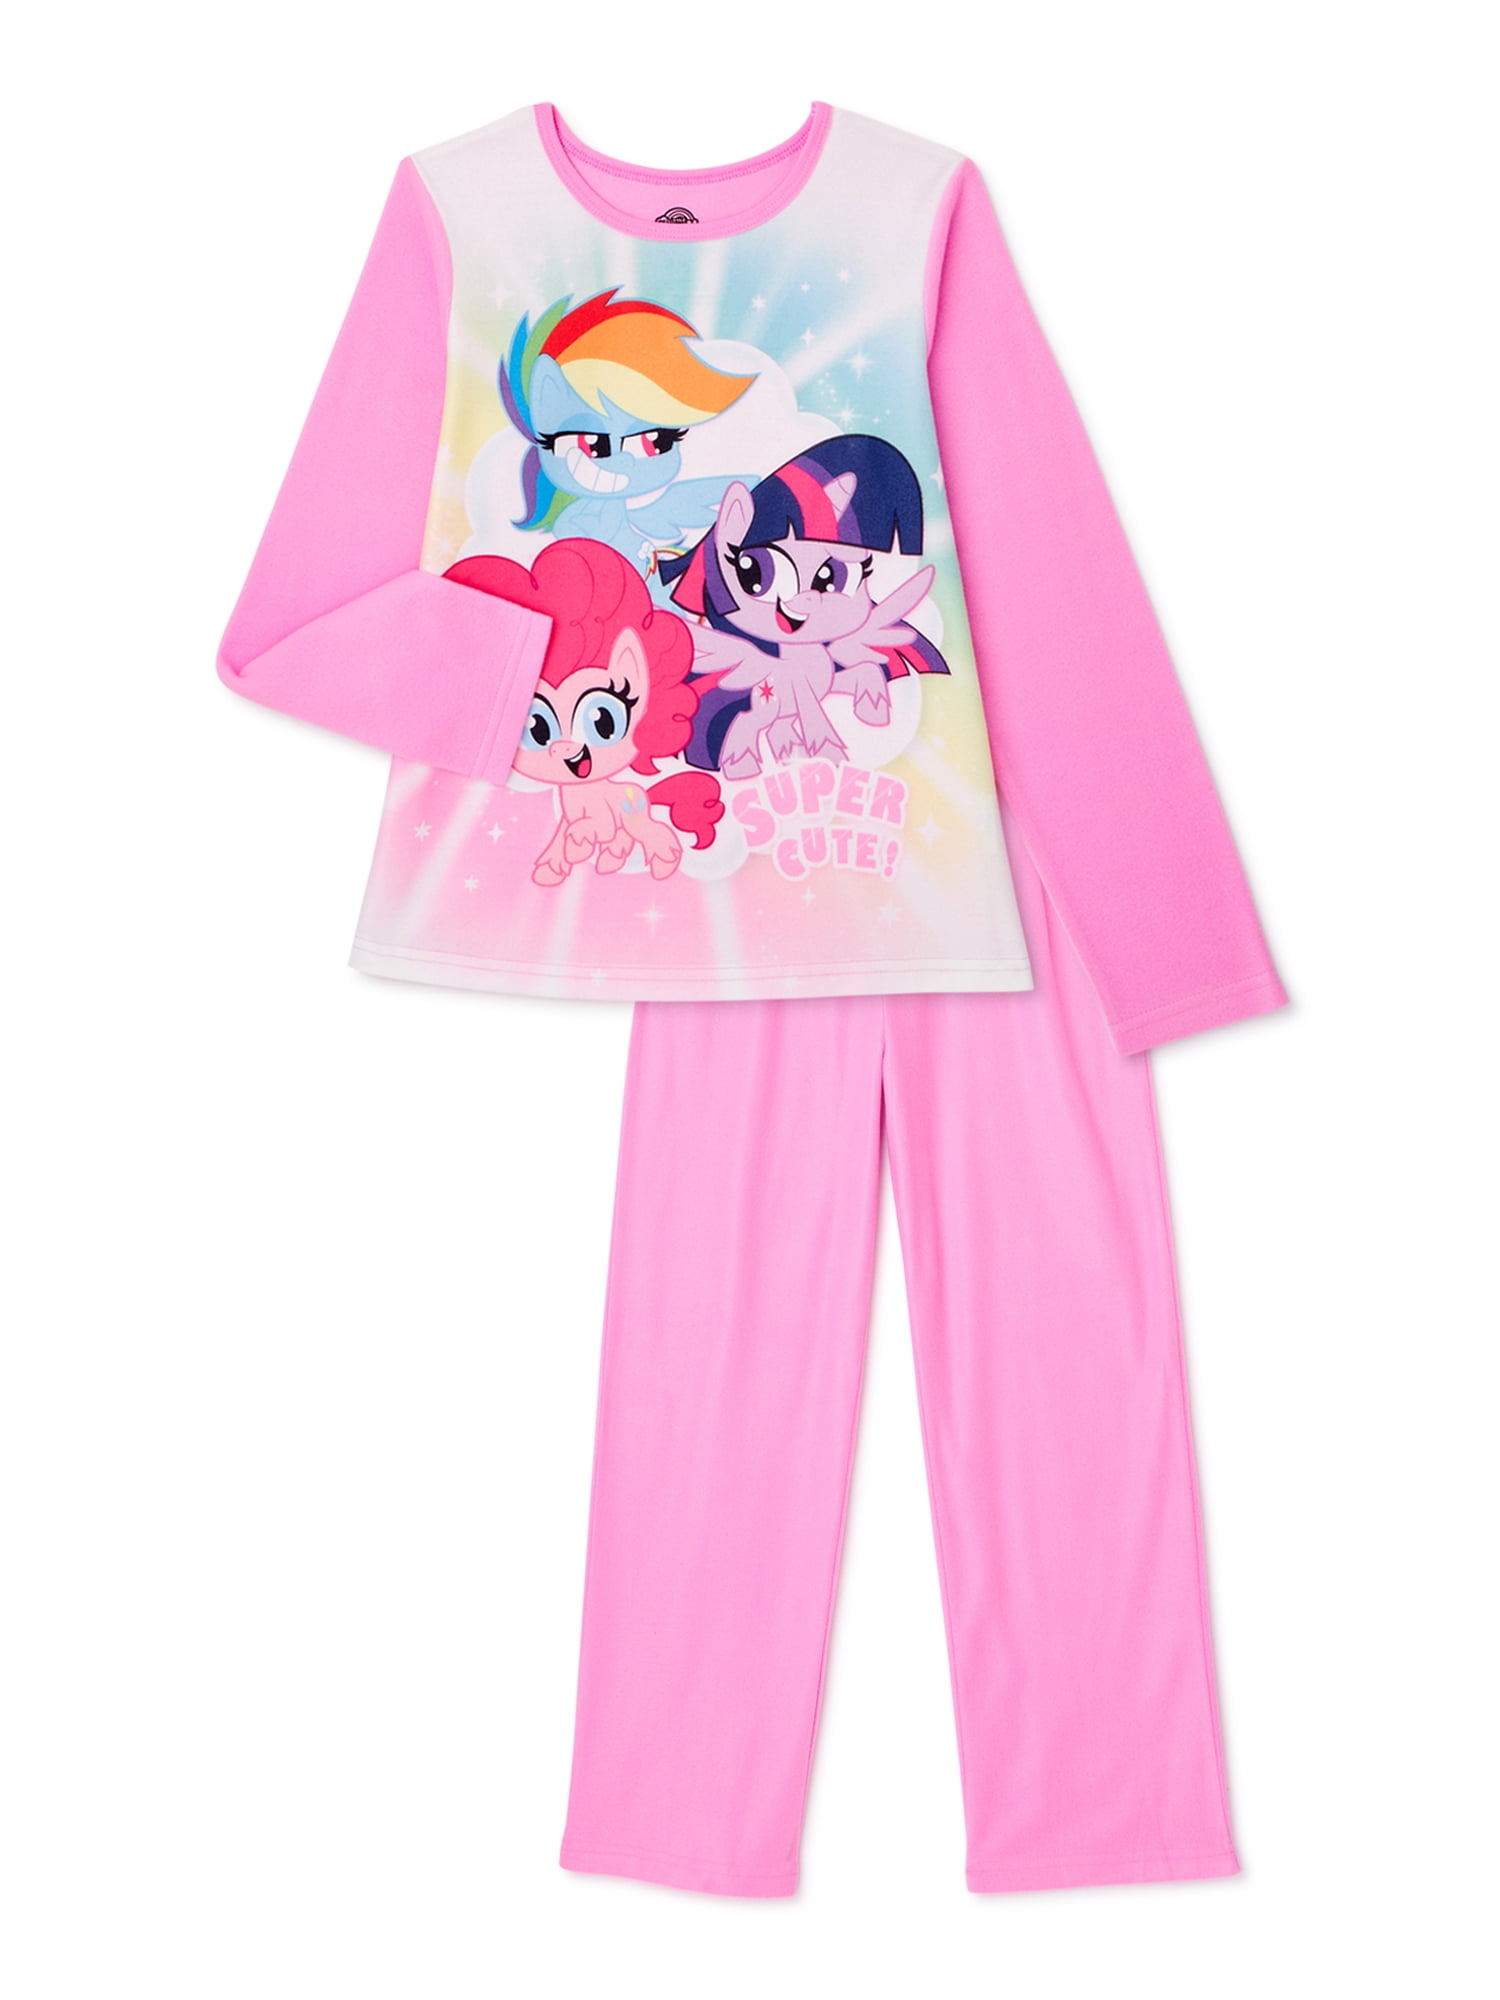 Ongeldig Hoogte ergens bij betrokken zijn My Little Pony Girls 4-12 Pajama Set, 2 Piece - Walmart.com